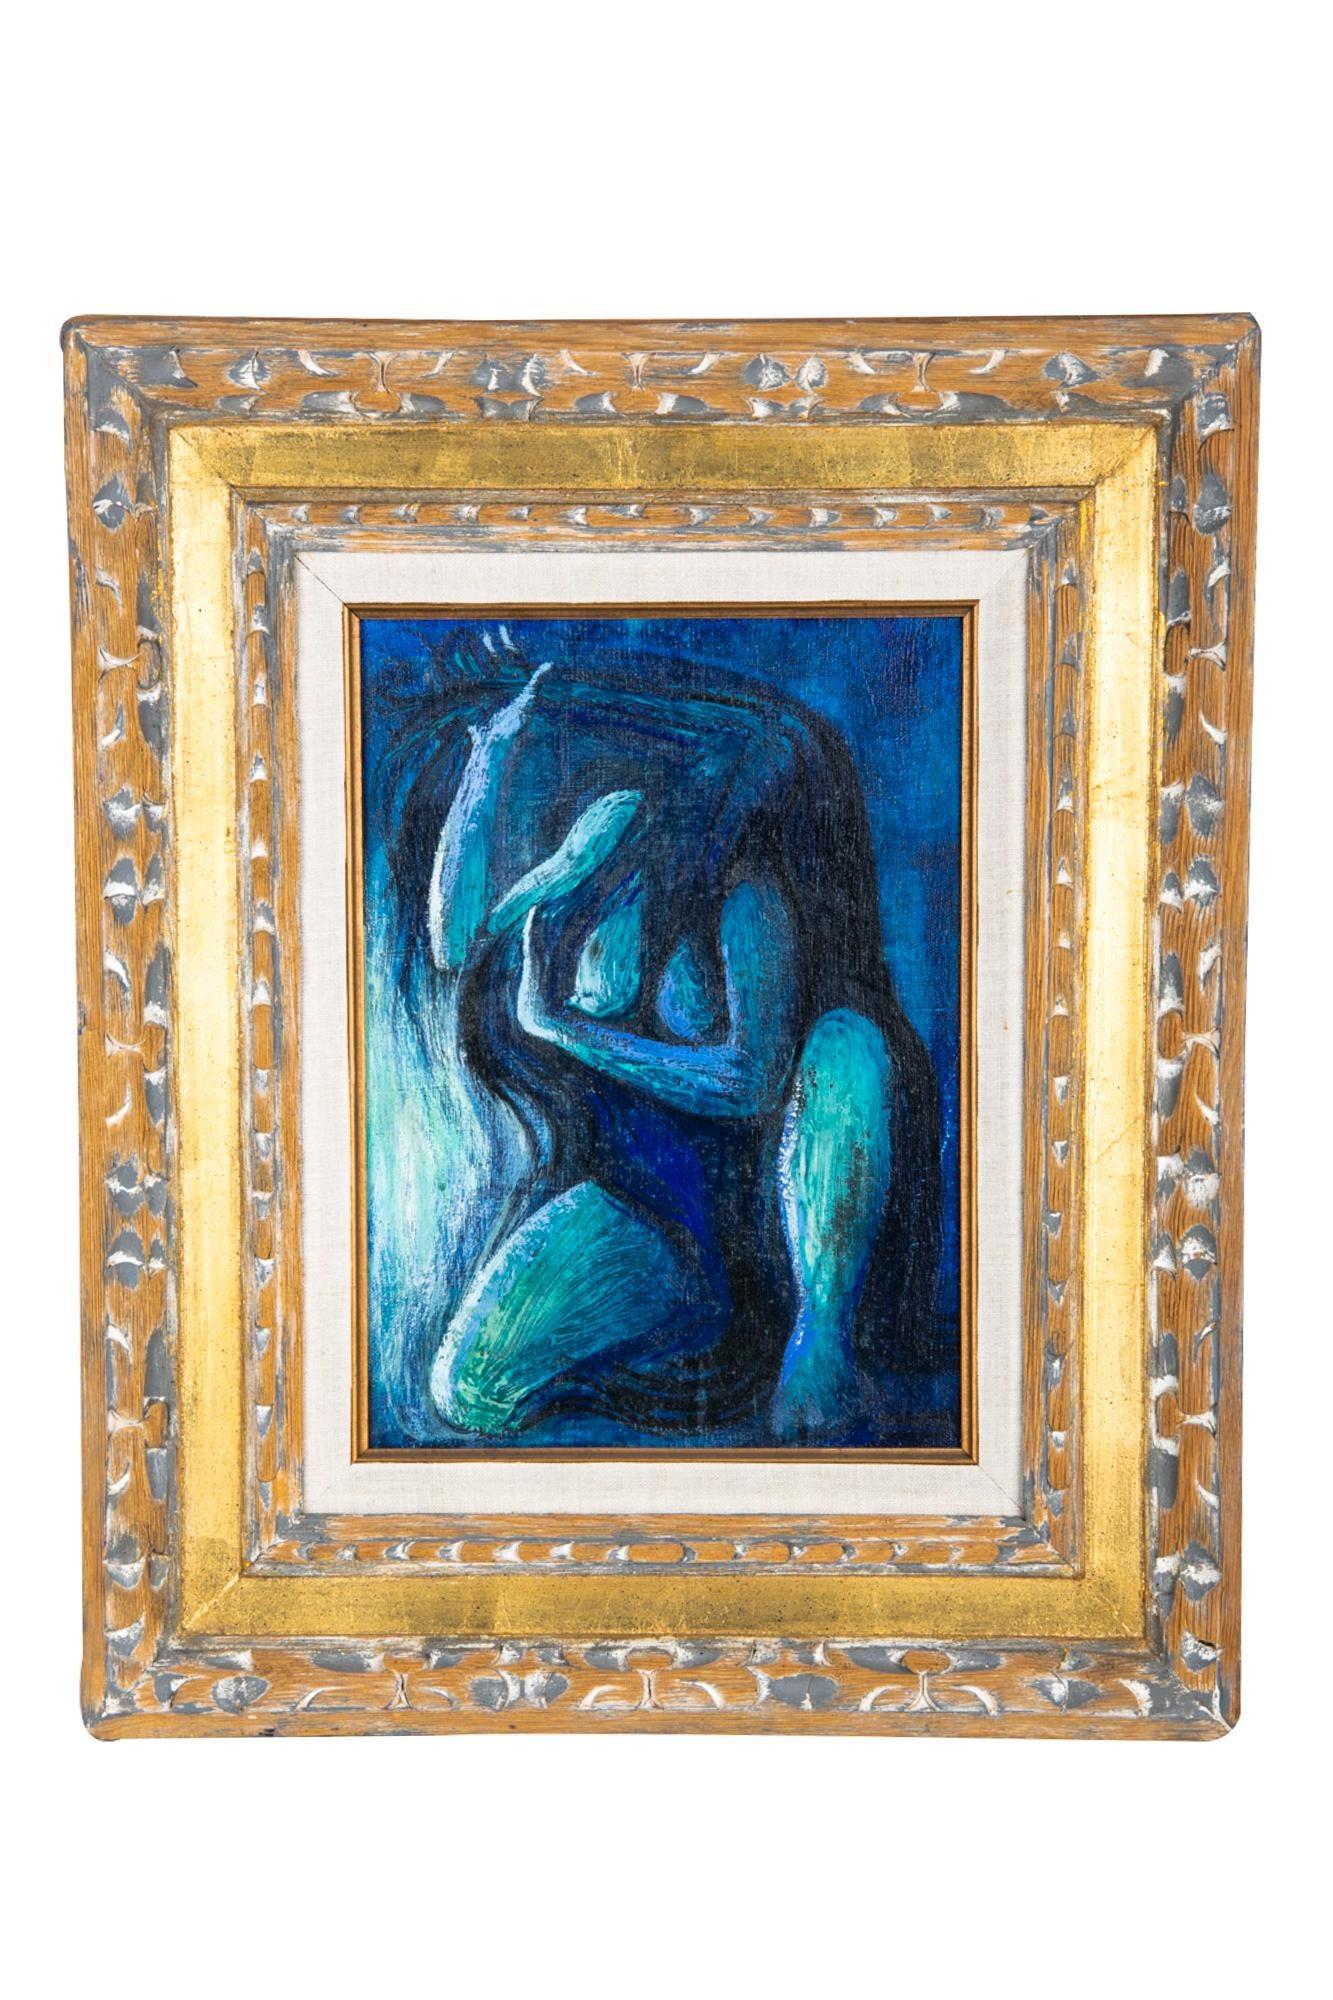 Huile sur toile magnifiquement encadrée représentant une figure bleue.

Taille : 13 3/4 x 9 3/4 pouces toile, 22 1/8 x 18 1/2 pouces cadre.